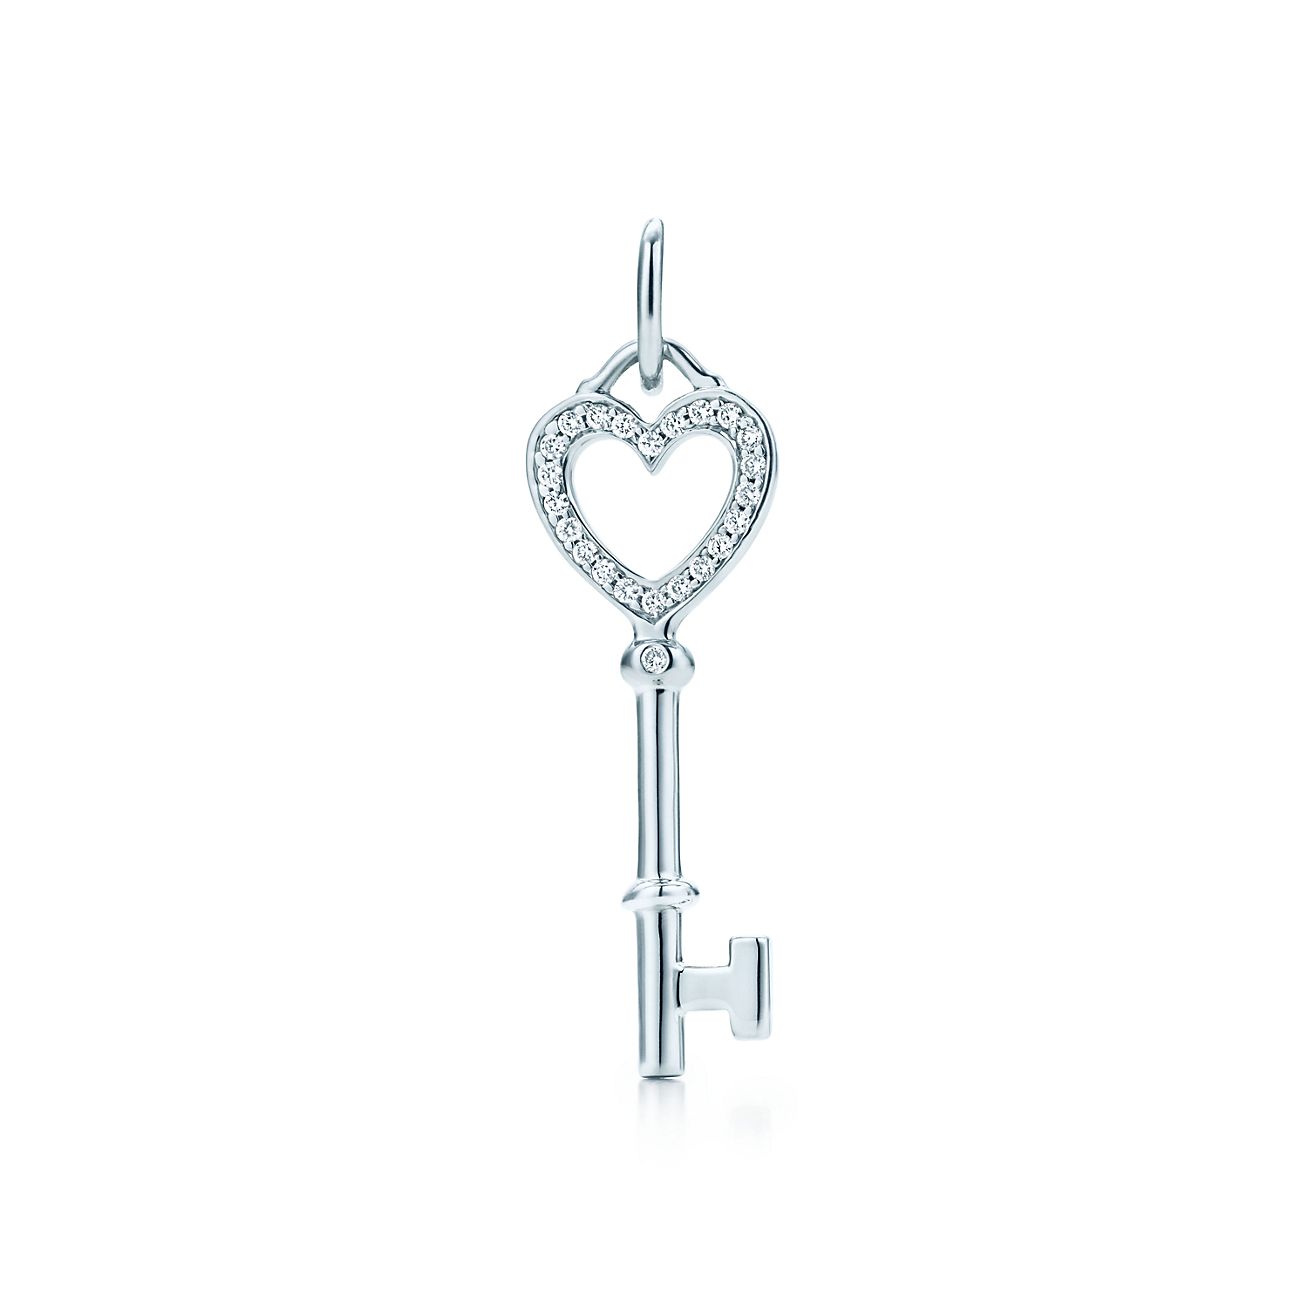 Tiffany Keys heart key pendant in 18k 